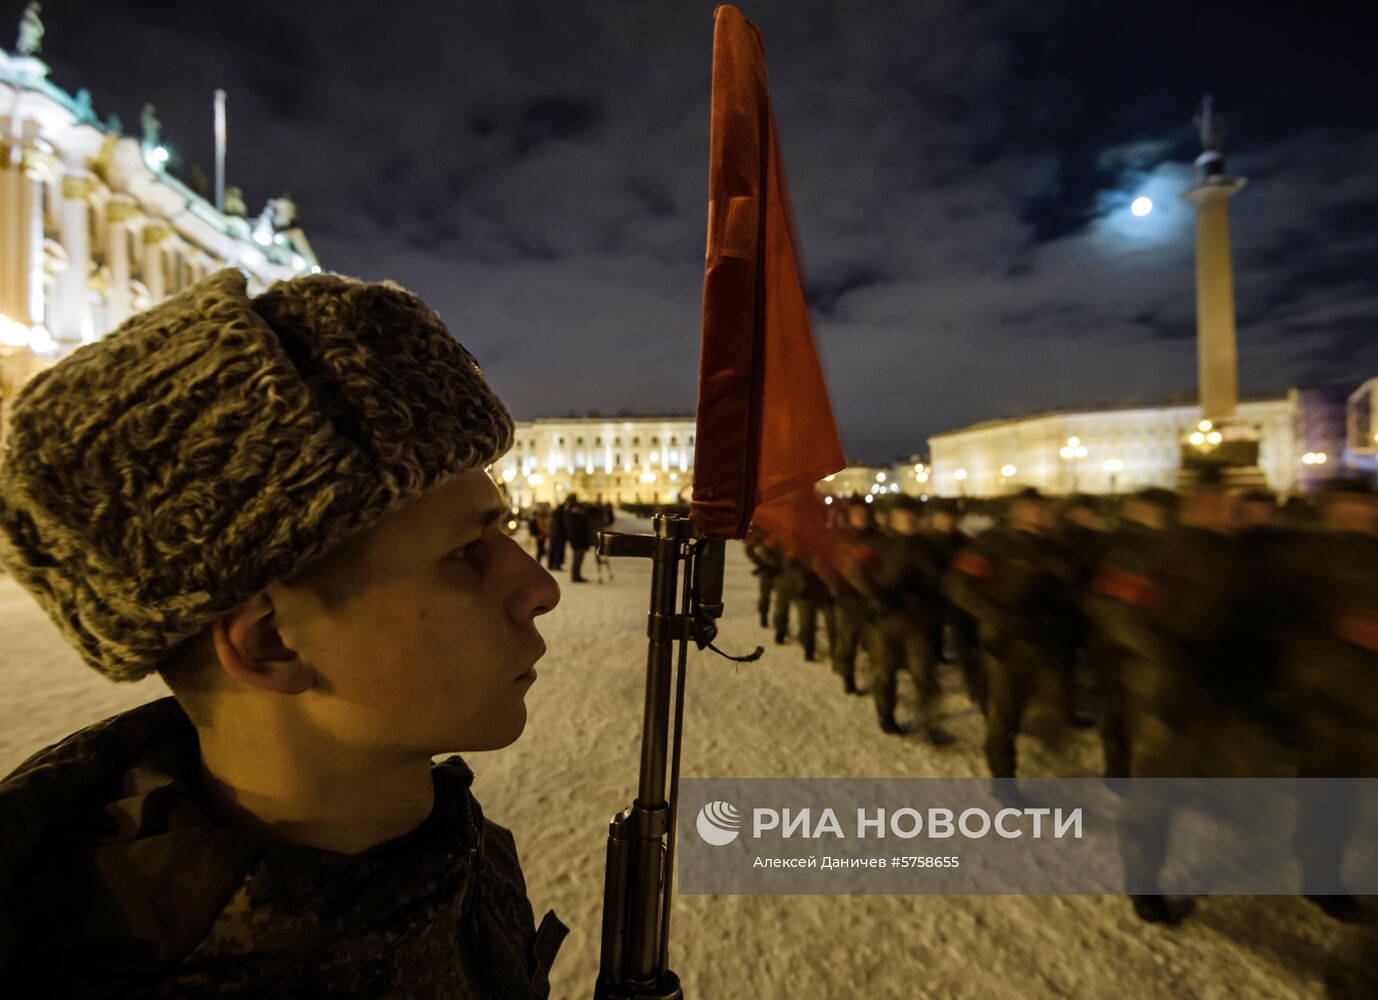 Репетиция парада в честь 75-летия снятия блокады Ленинграда